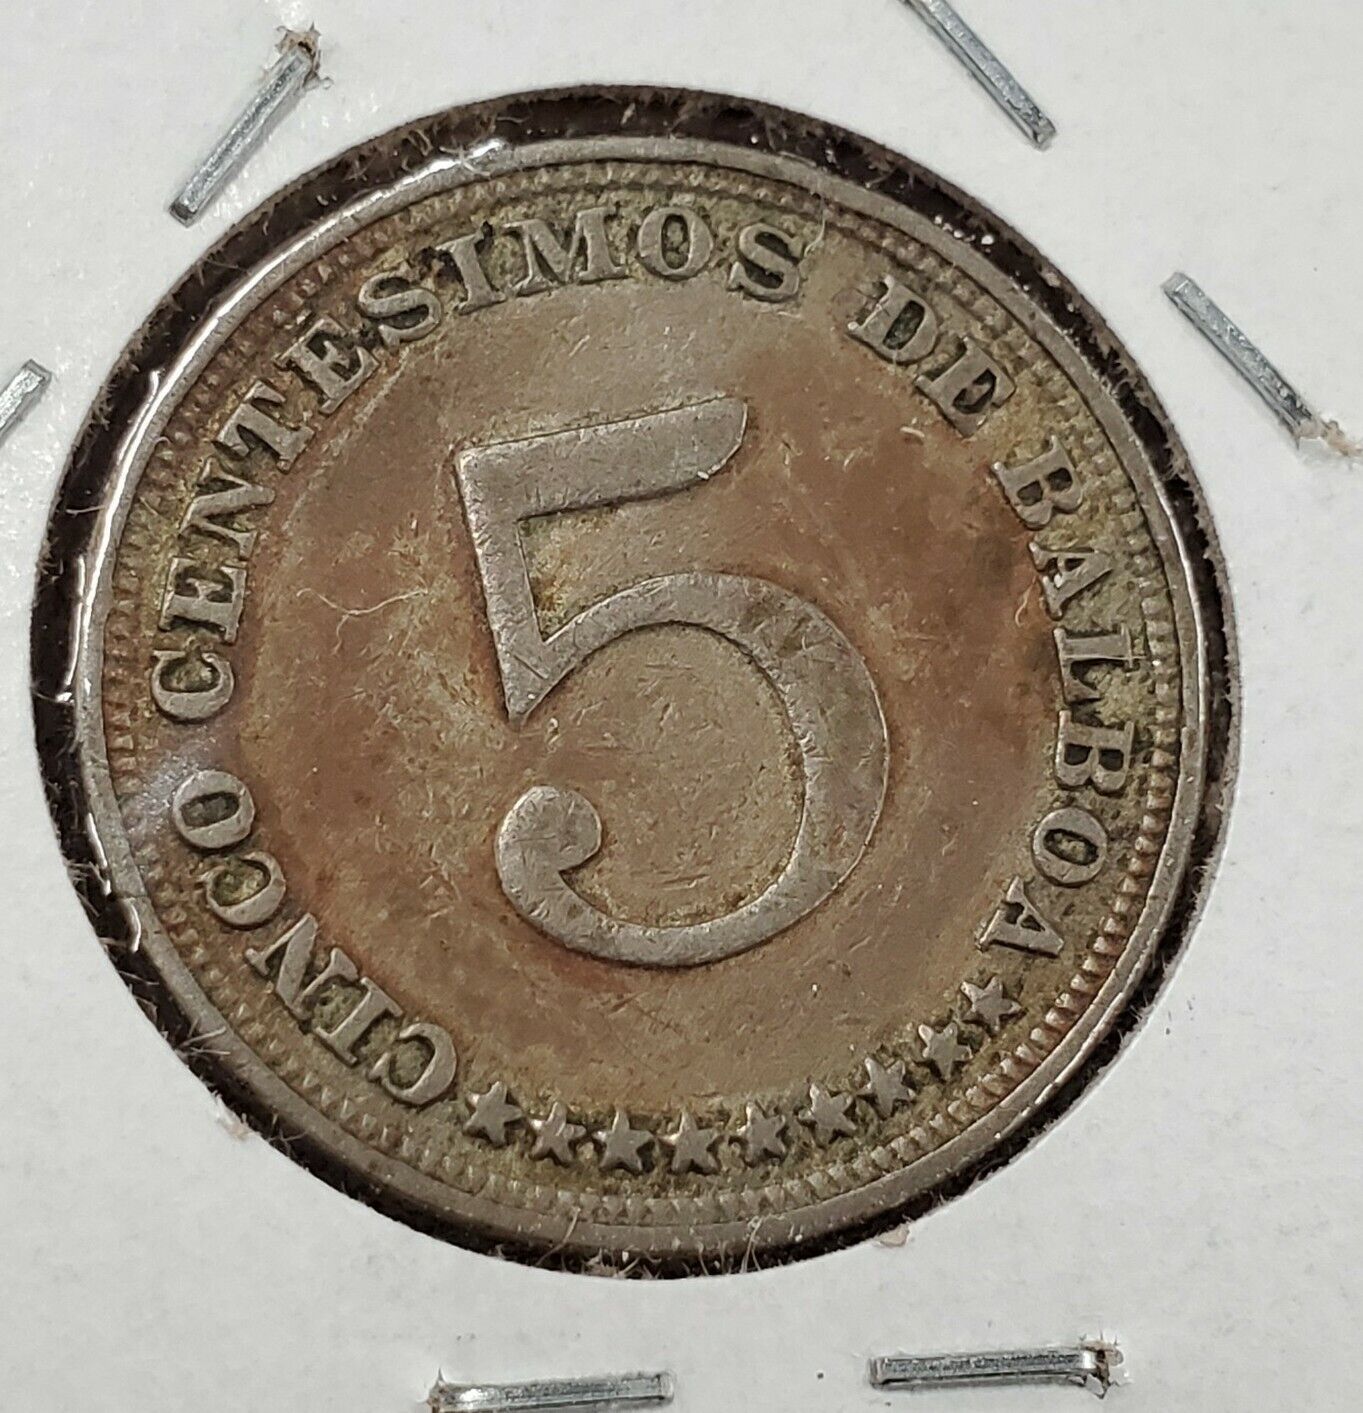 1932 PANAMA CINCO CENTESIMOS 5C Copper Nickel Coin High Circulated Condition